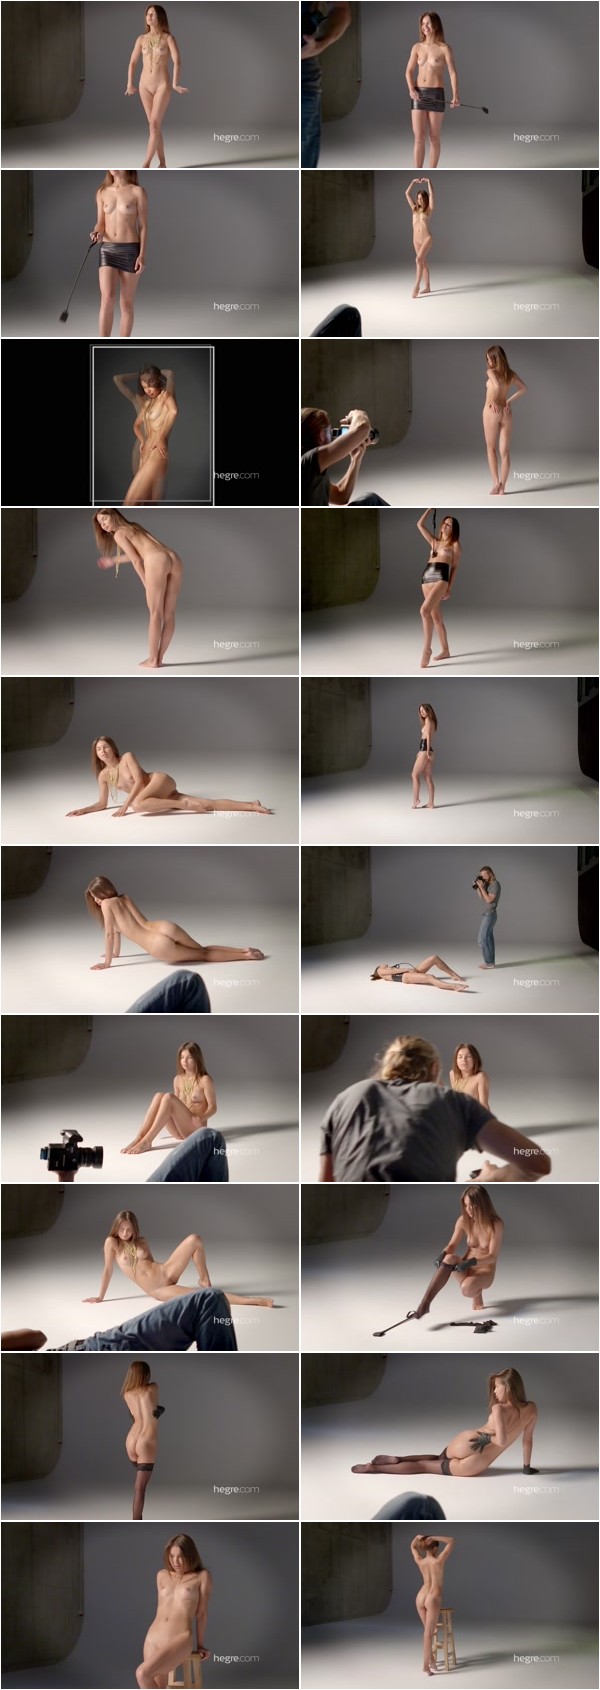 [Hegre-Art] Daniela - Nude Photo Shoot